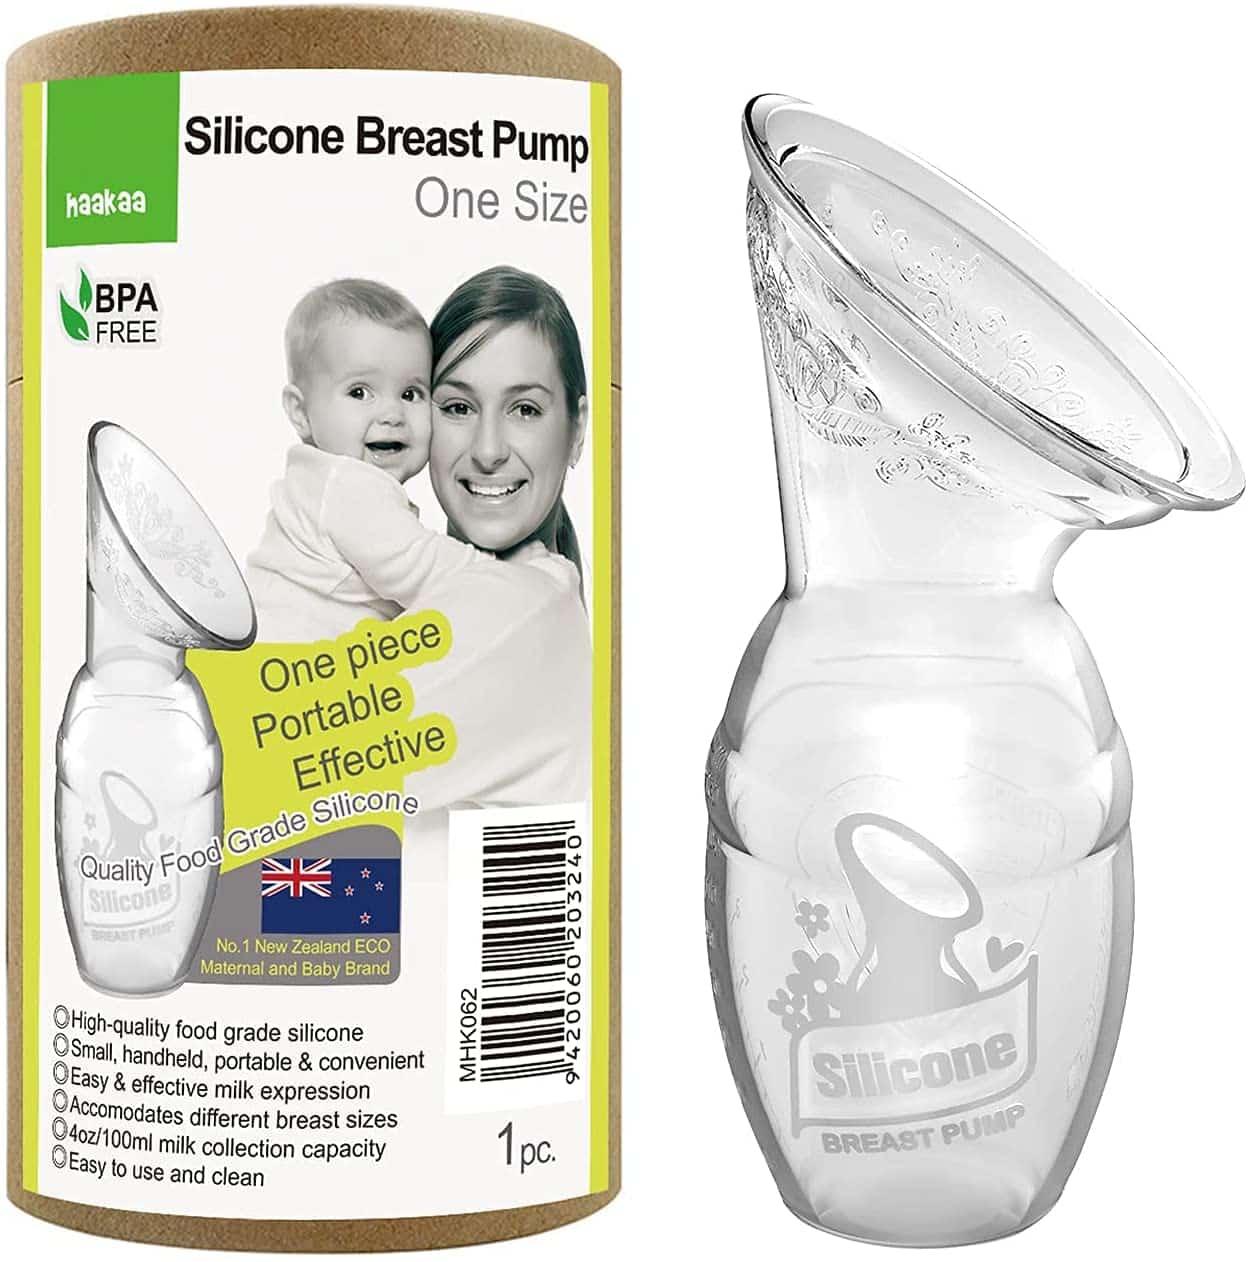 Tire-lait silicone, 1 unité – Lansinoh : Accessoires et produits  d'allaitement